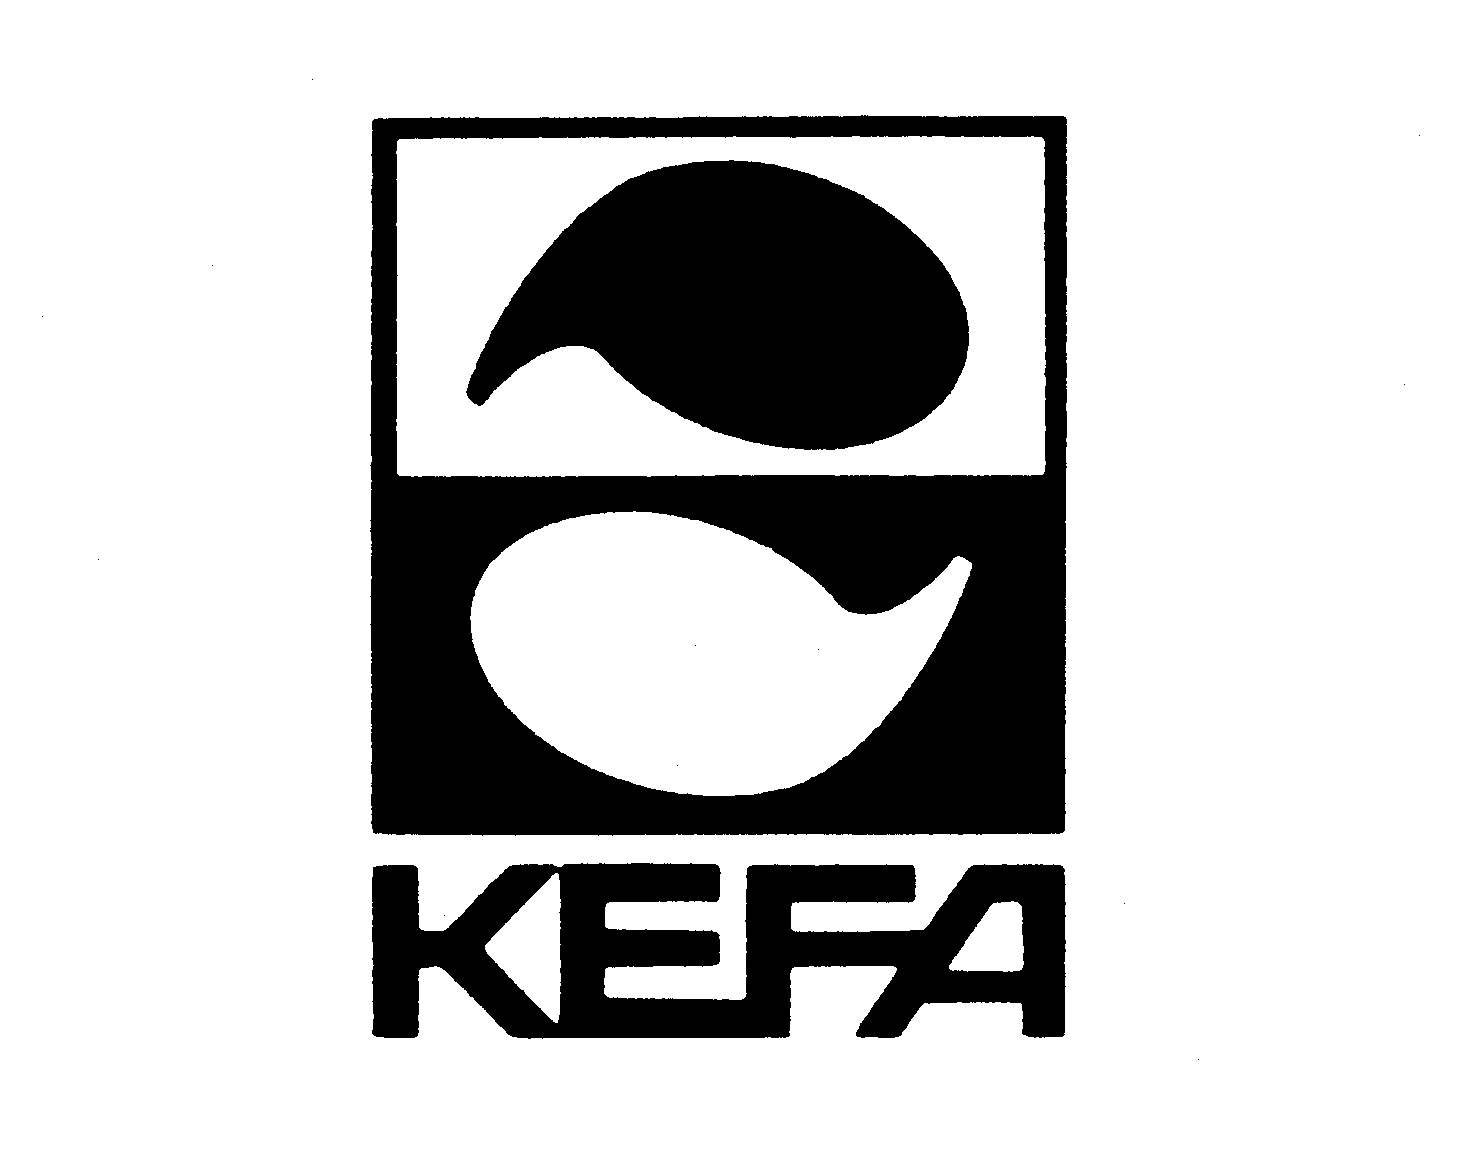 Trademark Logo KEFA